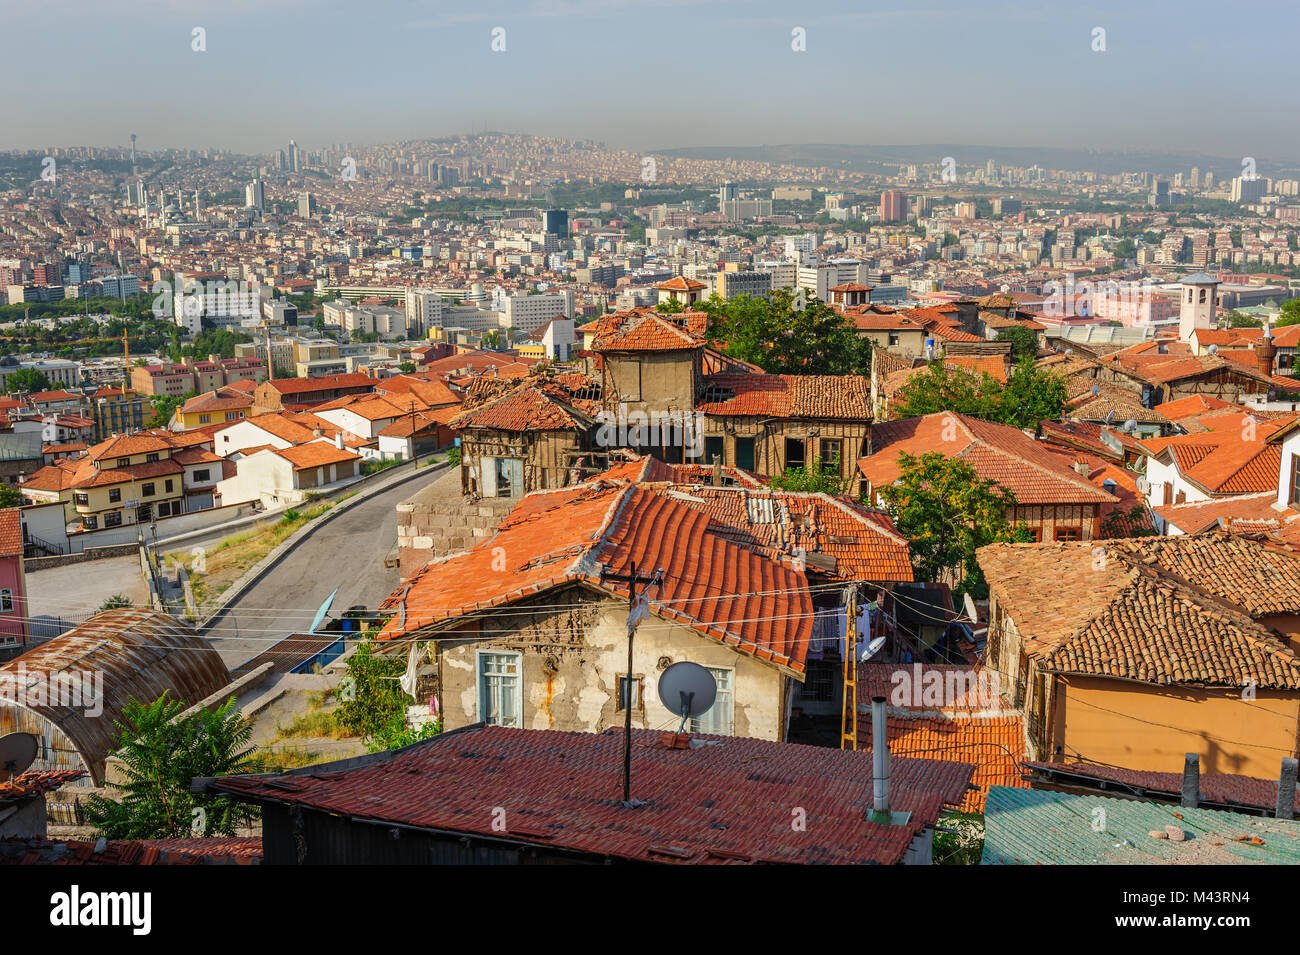 Cityscape of Ankara, Turkey Stock Photo